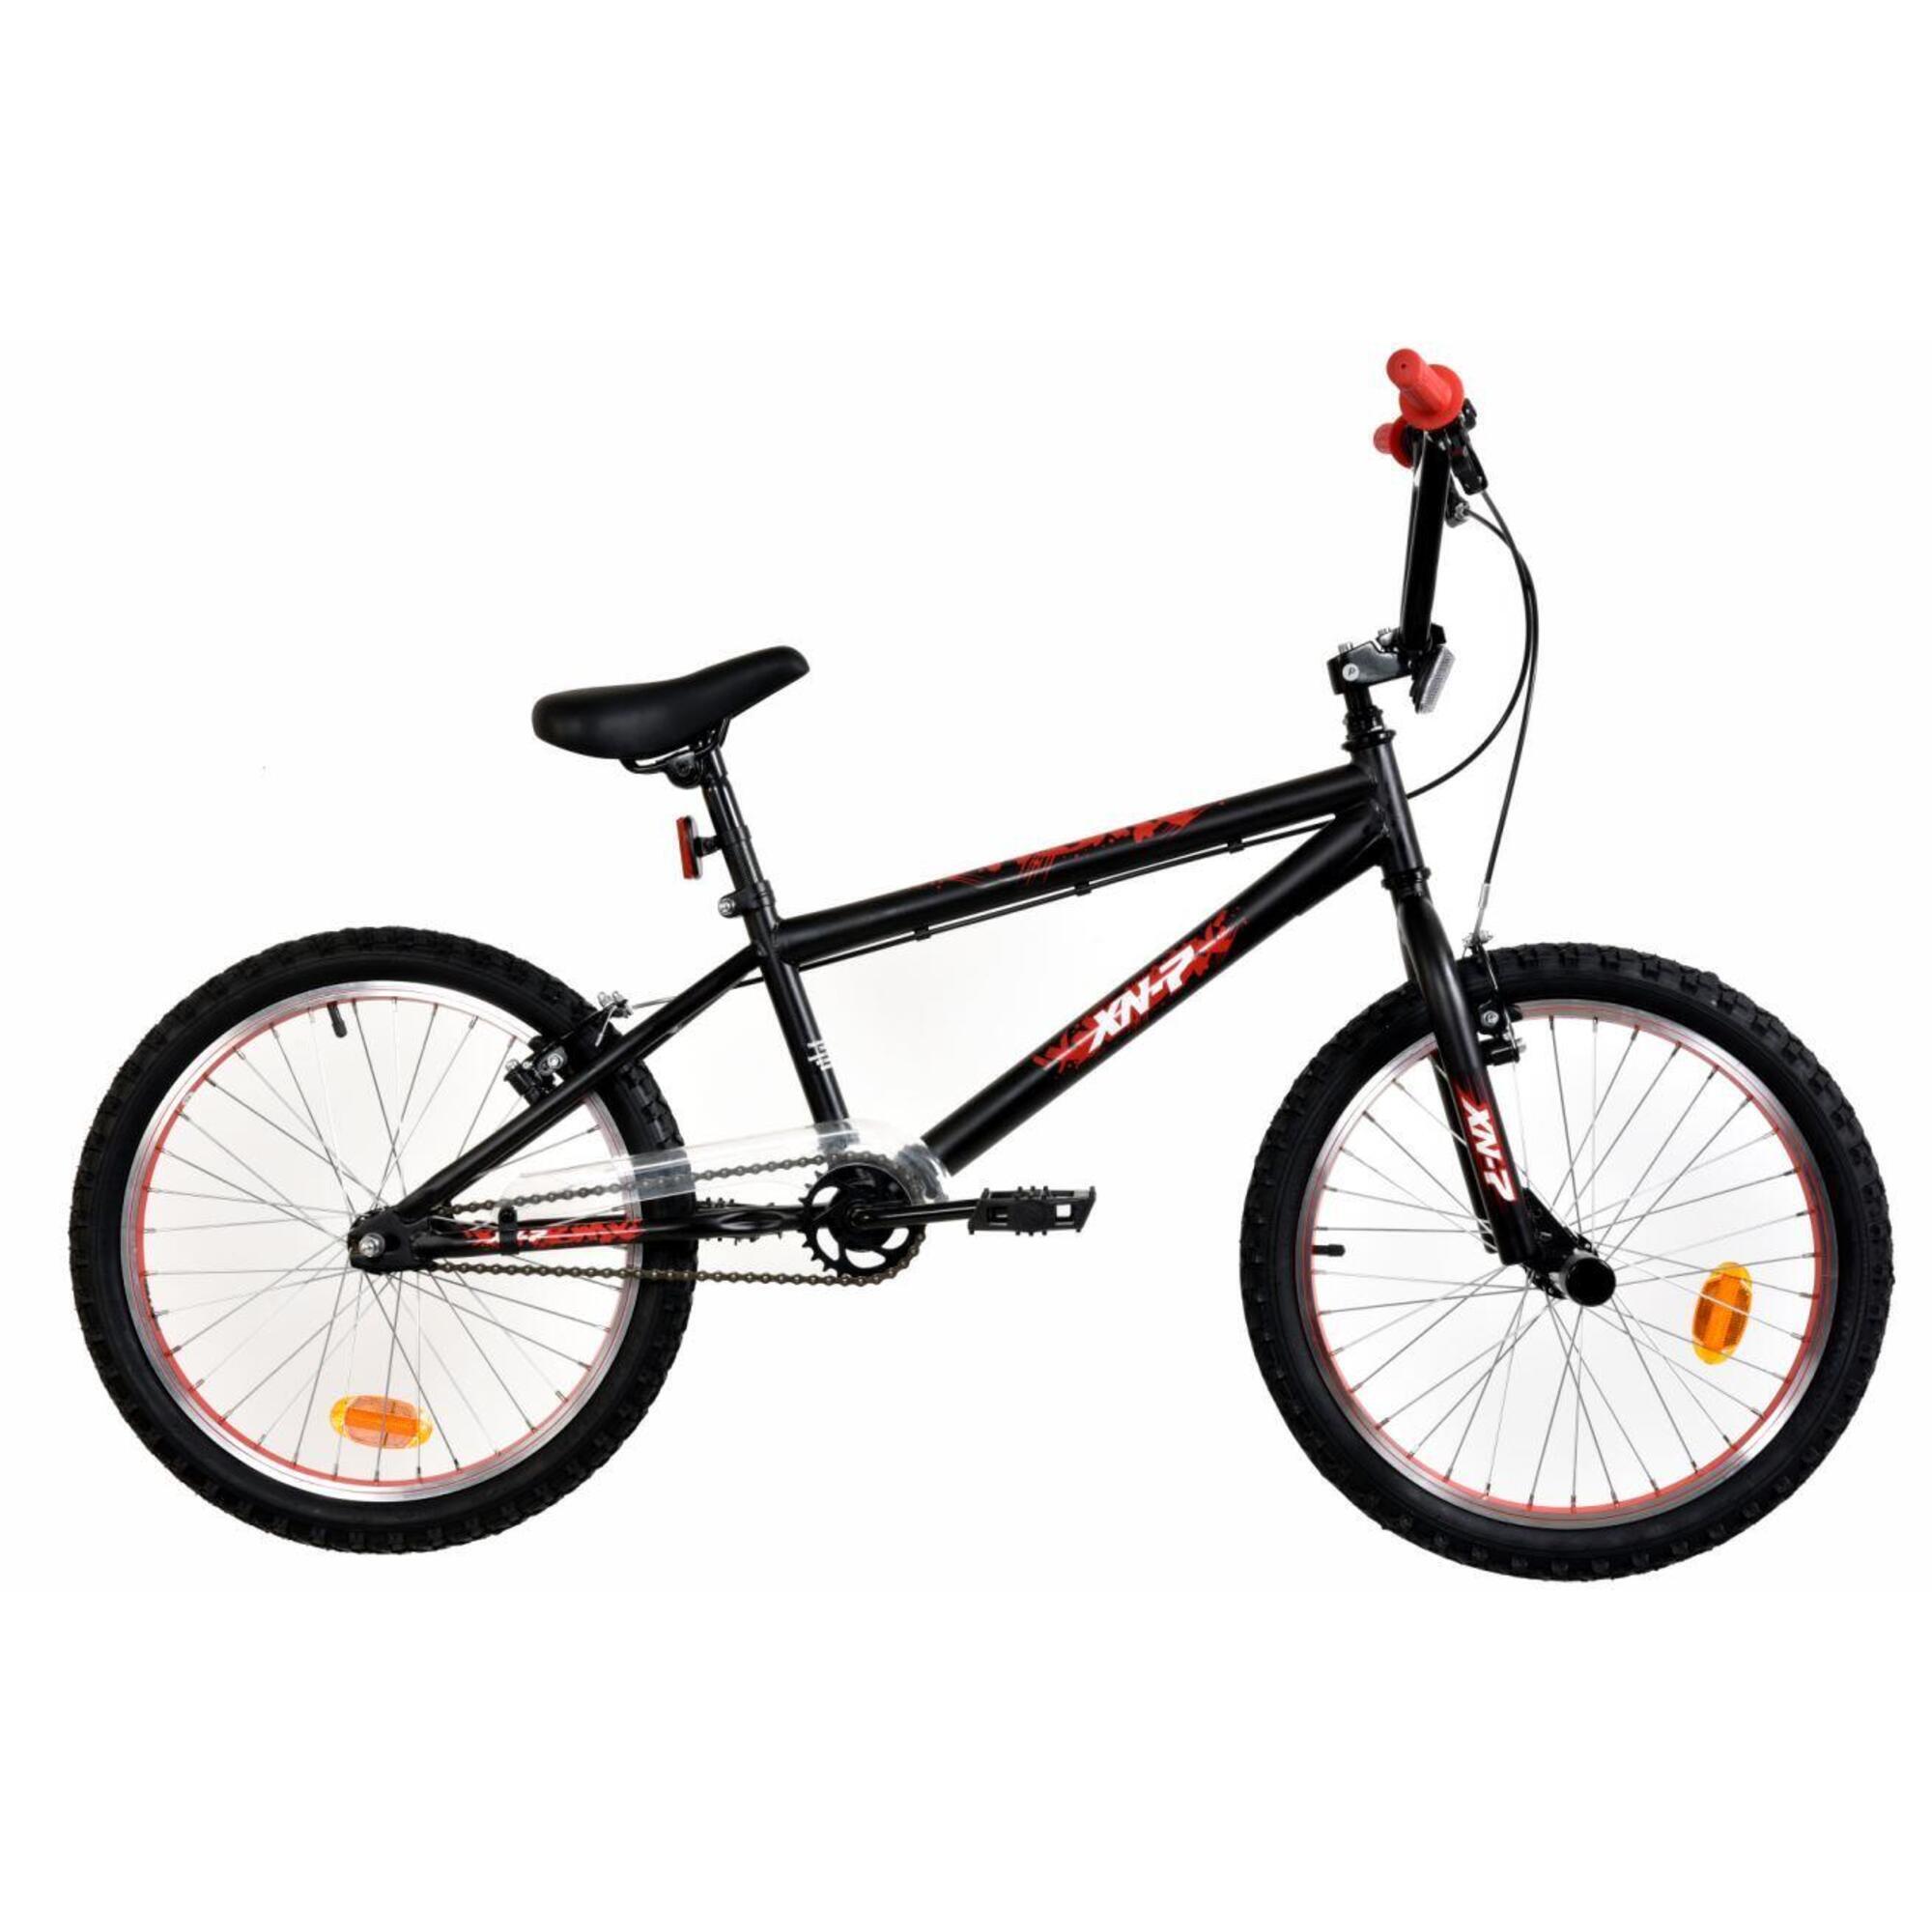 XN-7-20 BMX Bike, 20In Wheel - Satin Black/Red 1/1